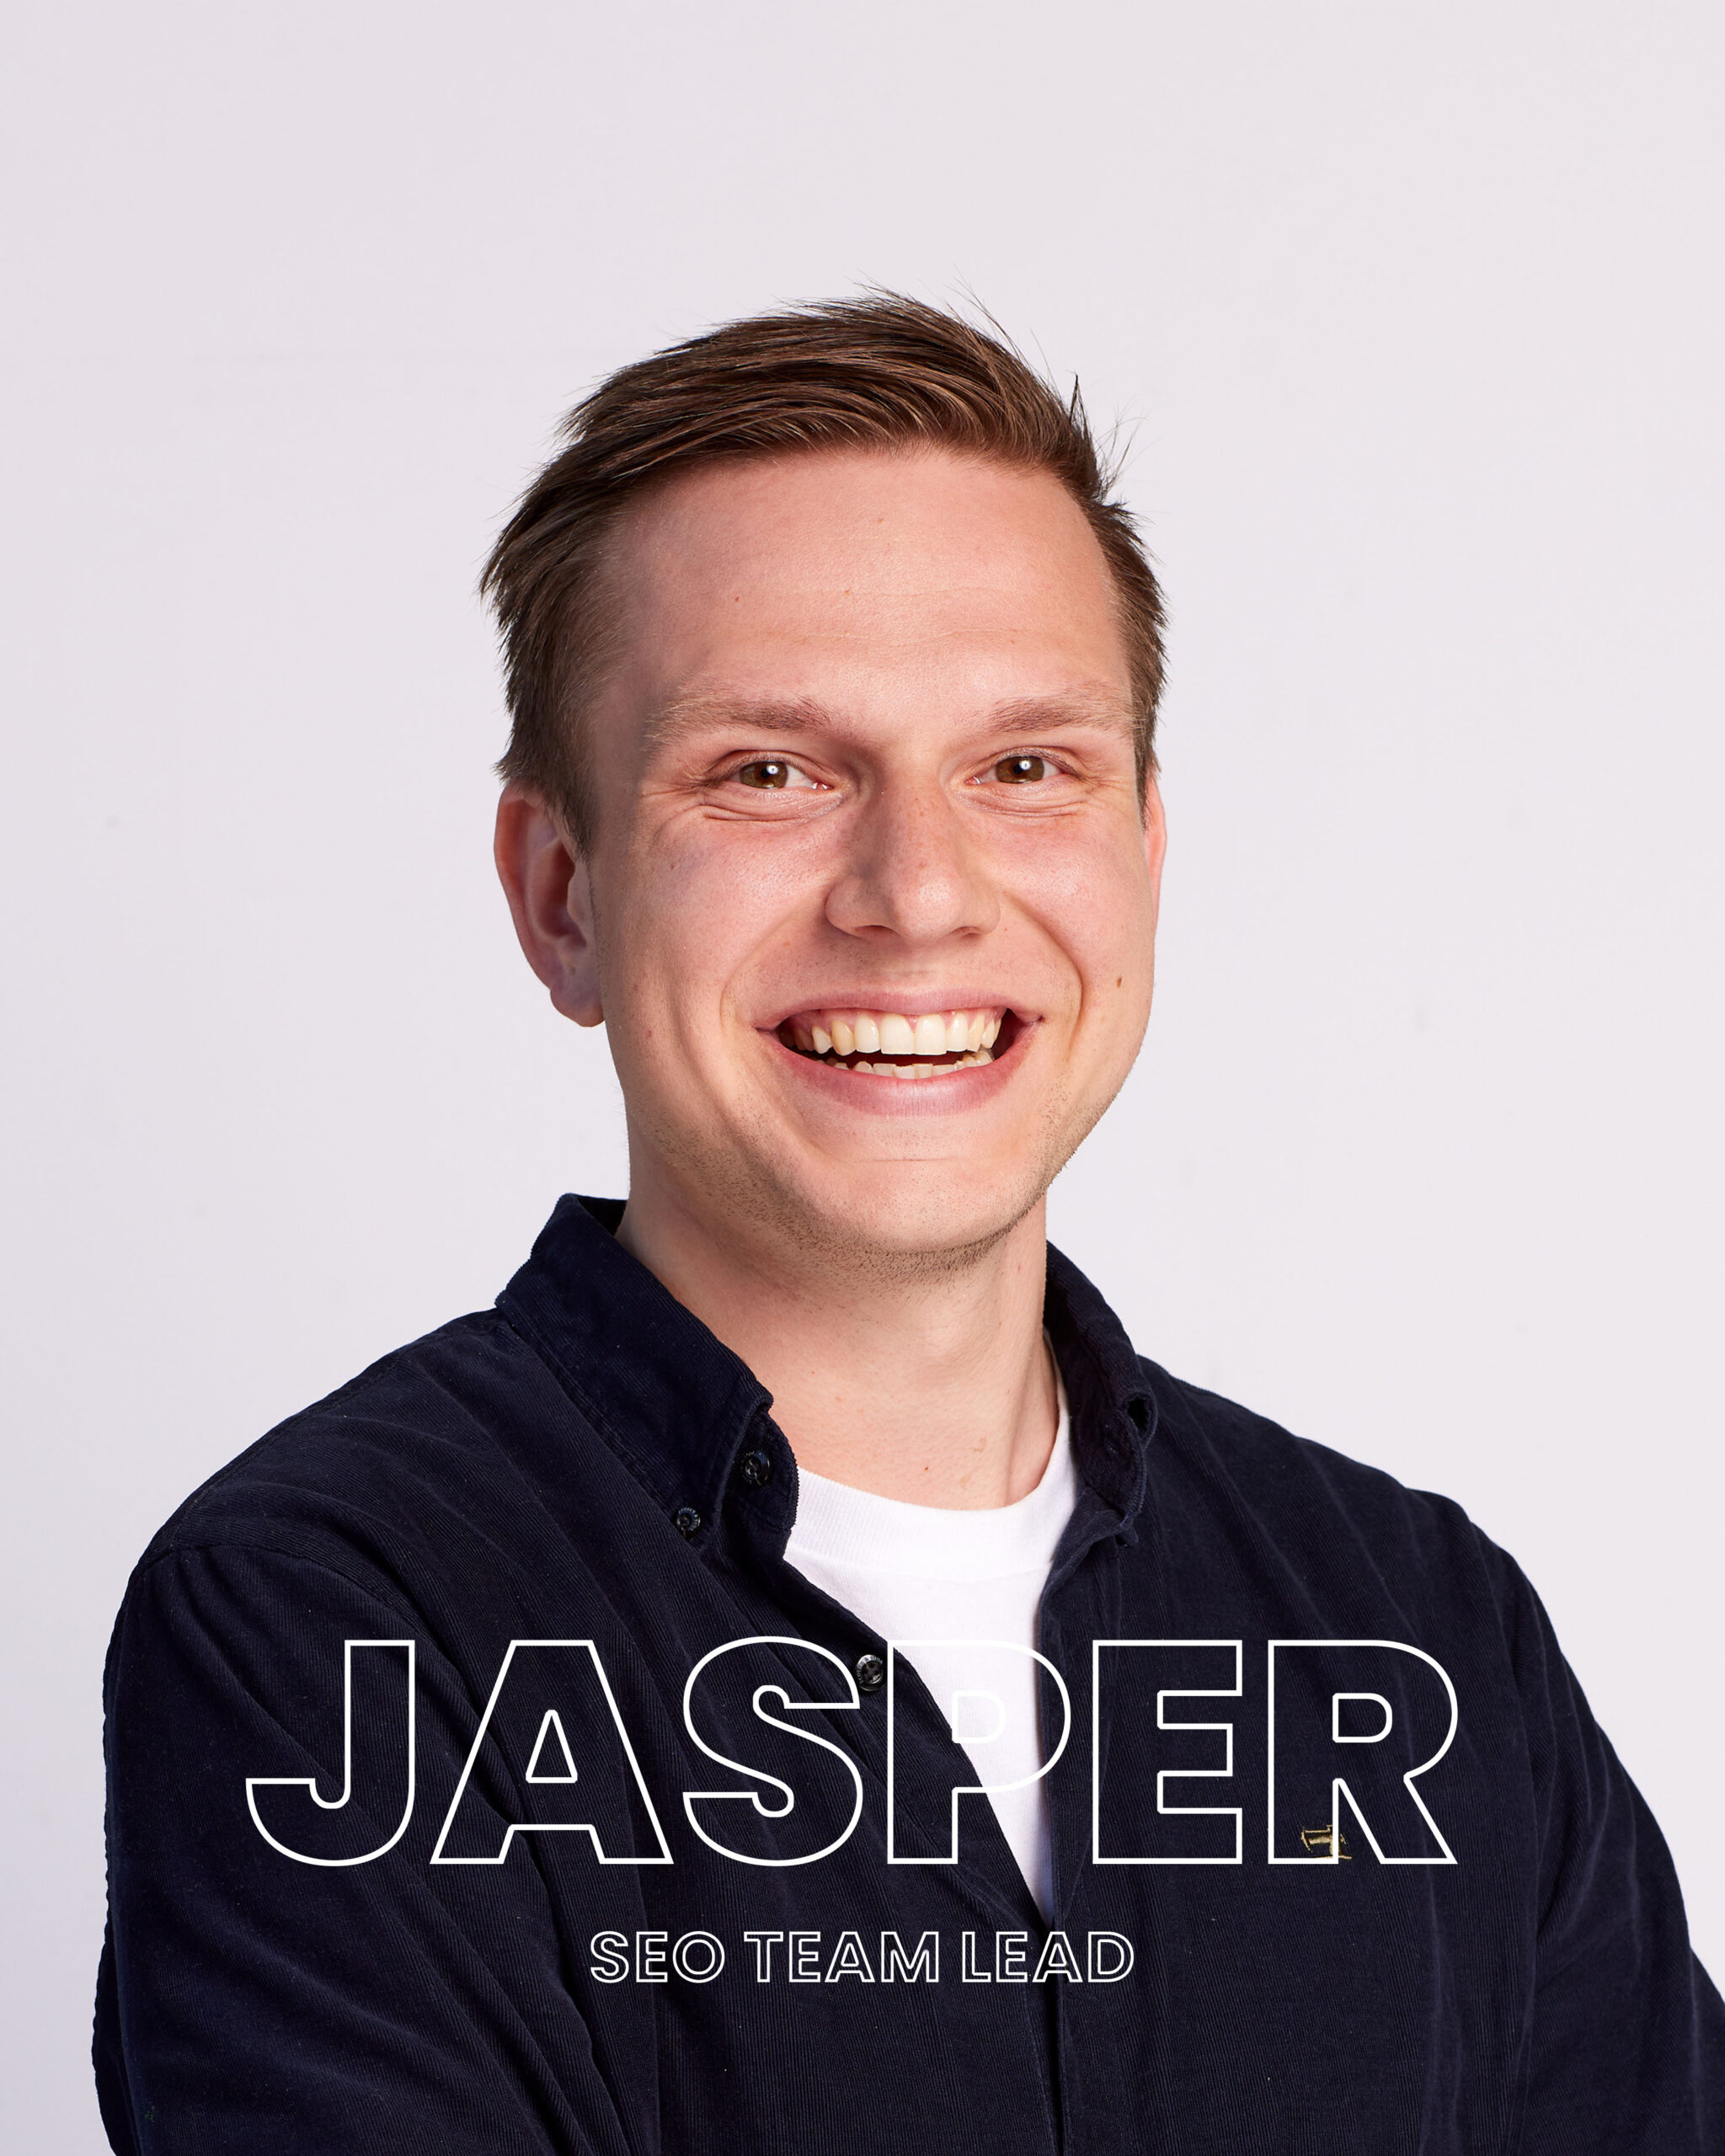 Jasper - DGTLbase